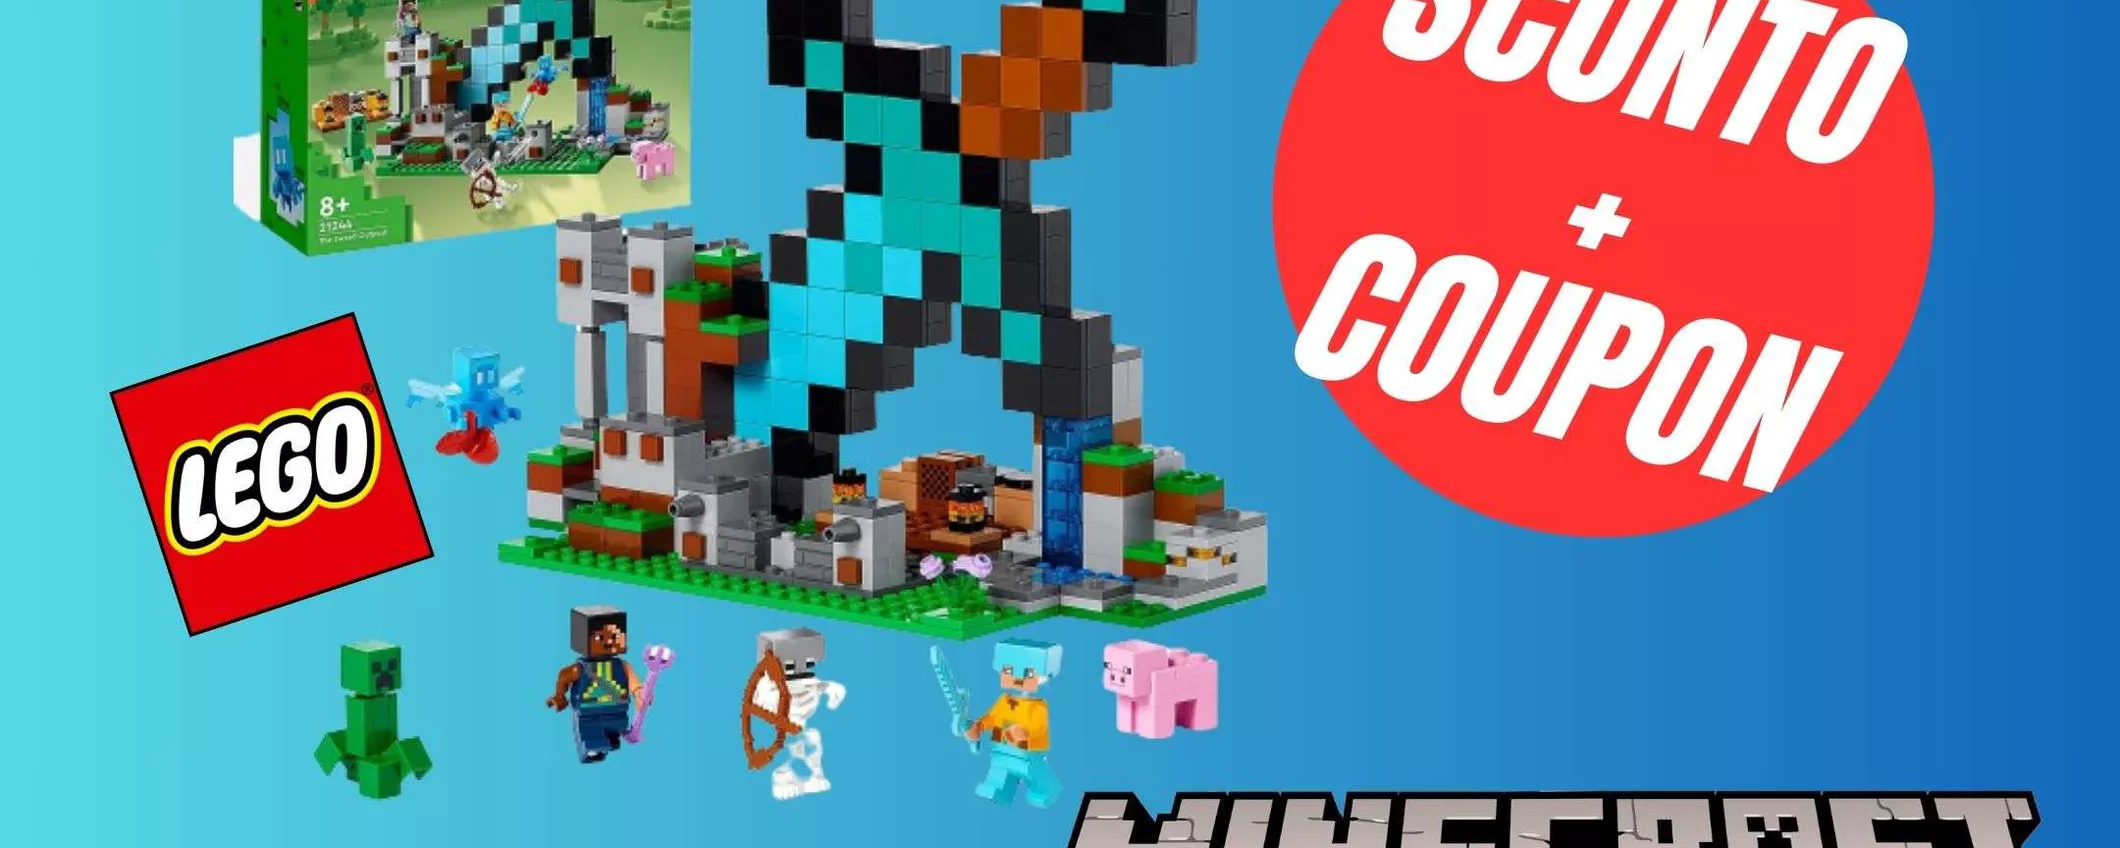 Il set LEGO di Minecraft in SCONTO grazie al COUPON ESCLUSIVO! (-15%)